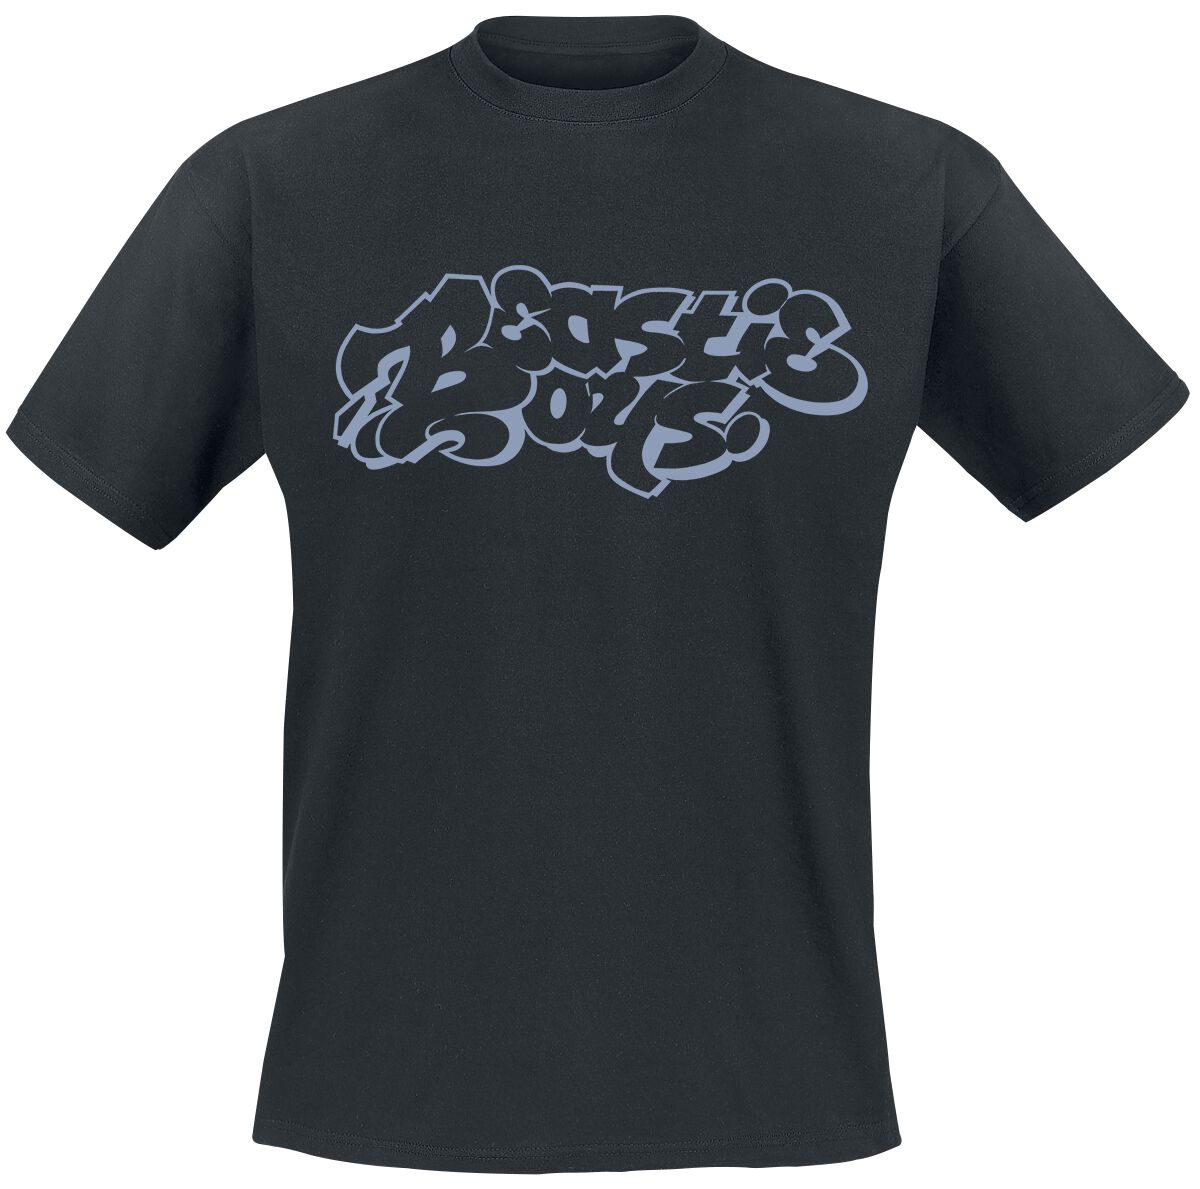 Beastie Boys T-Shirt - Graffiti Logo - S bis XXL - für Männer - Größe S - schwarz  - Lizenziertes Merchandise!